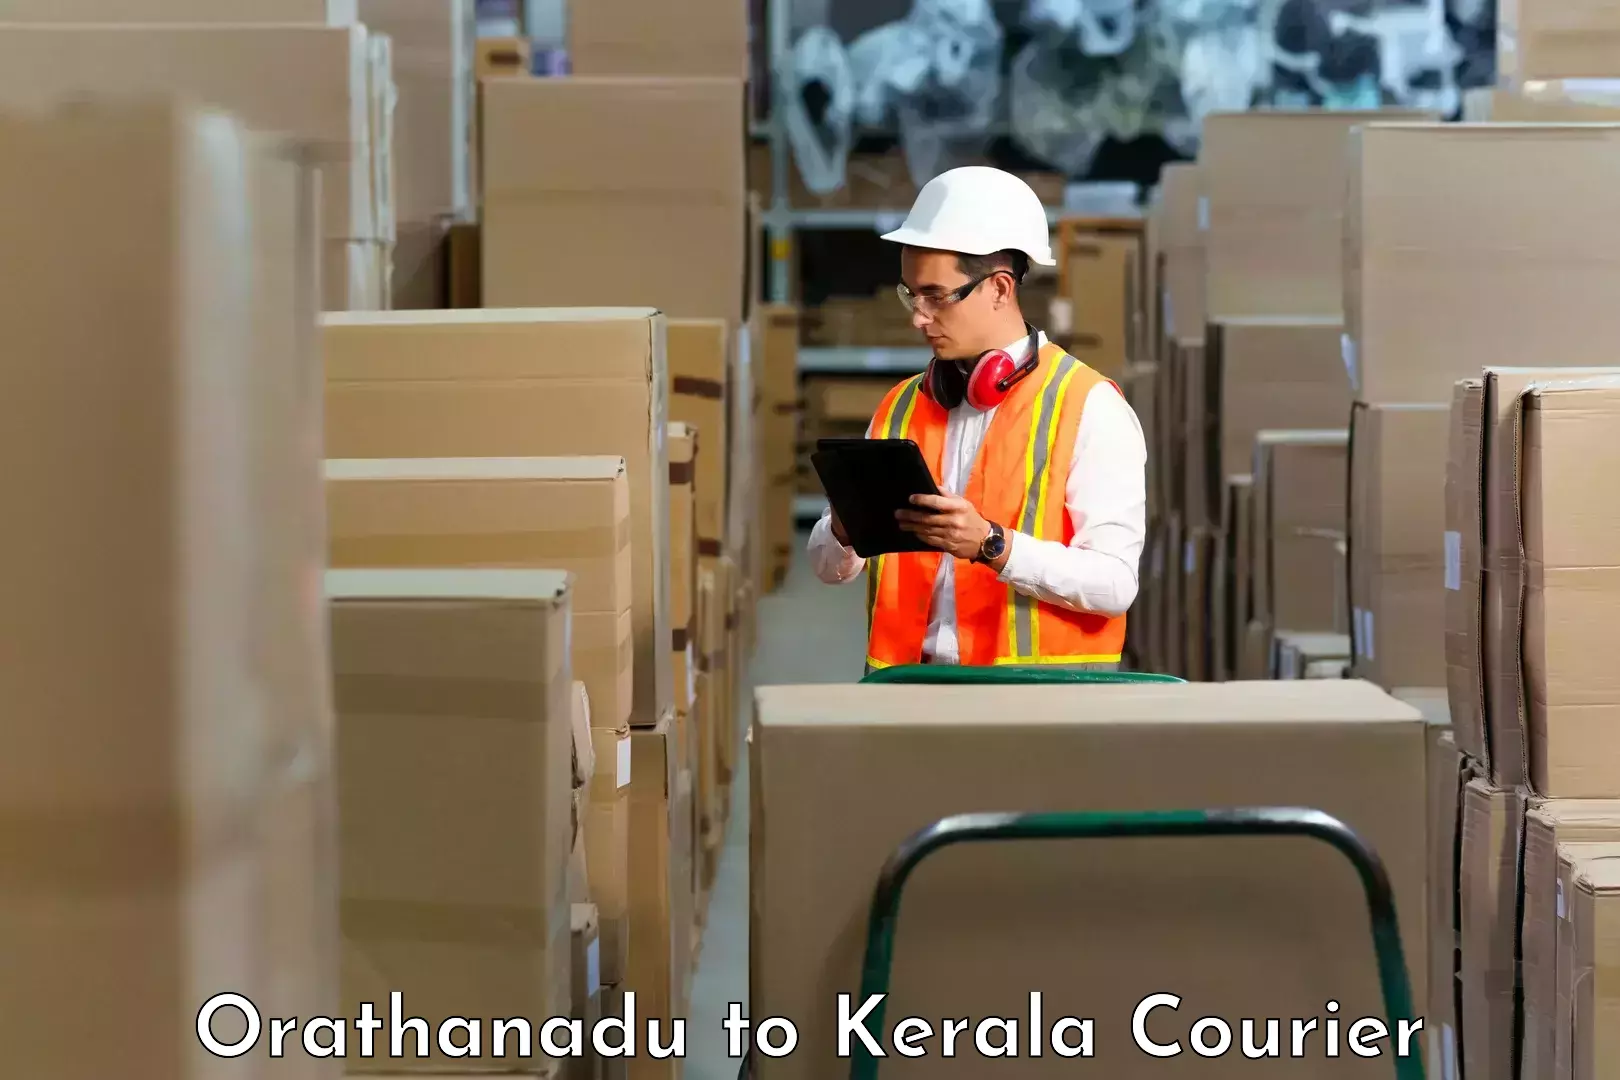 Specialized shipment handling Orathanadu to Vadakkencherry